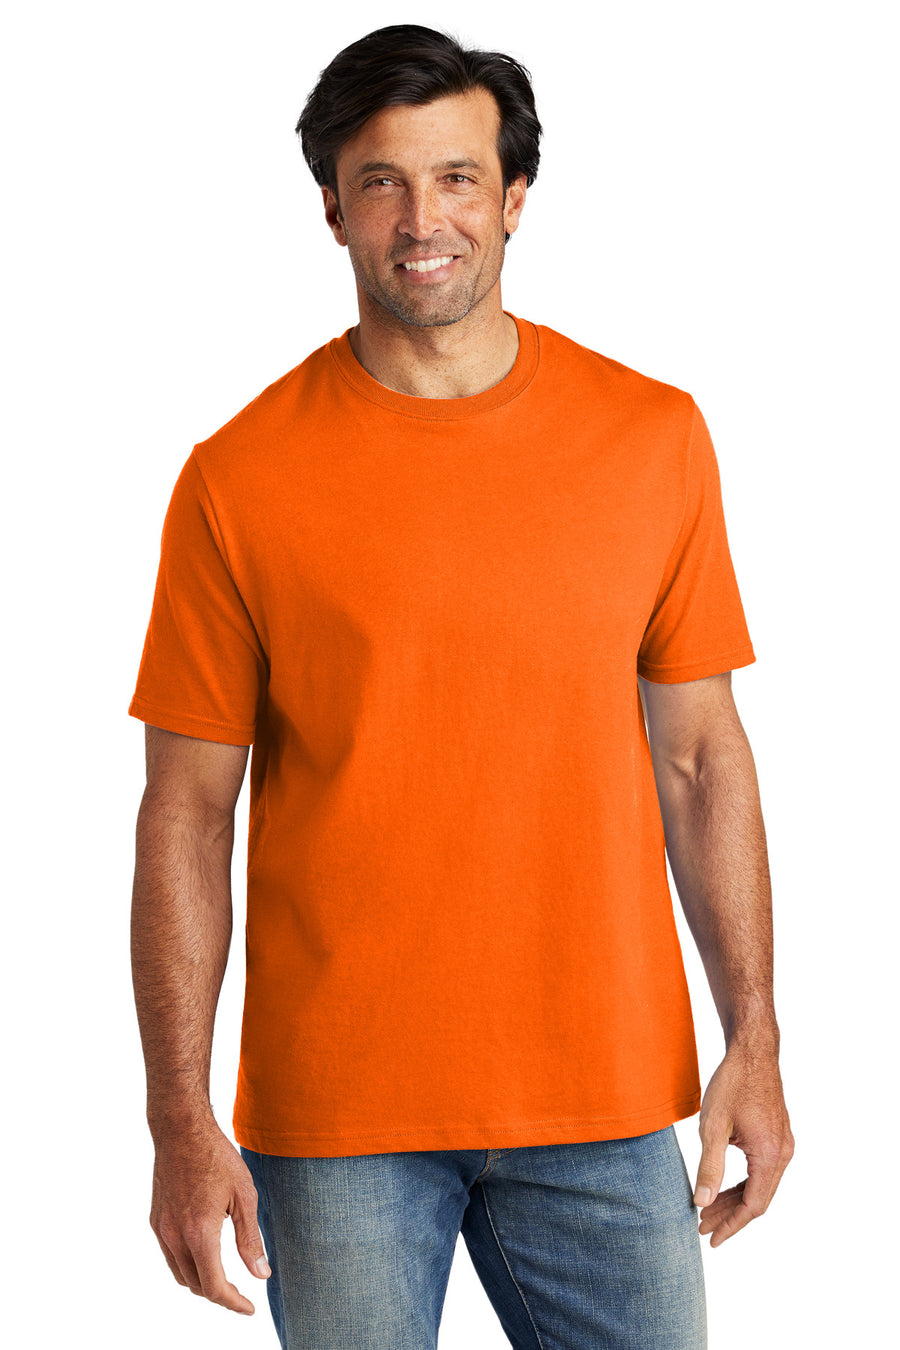 VL100-Safety Orange-front_model